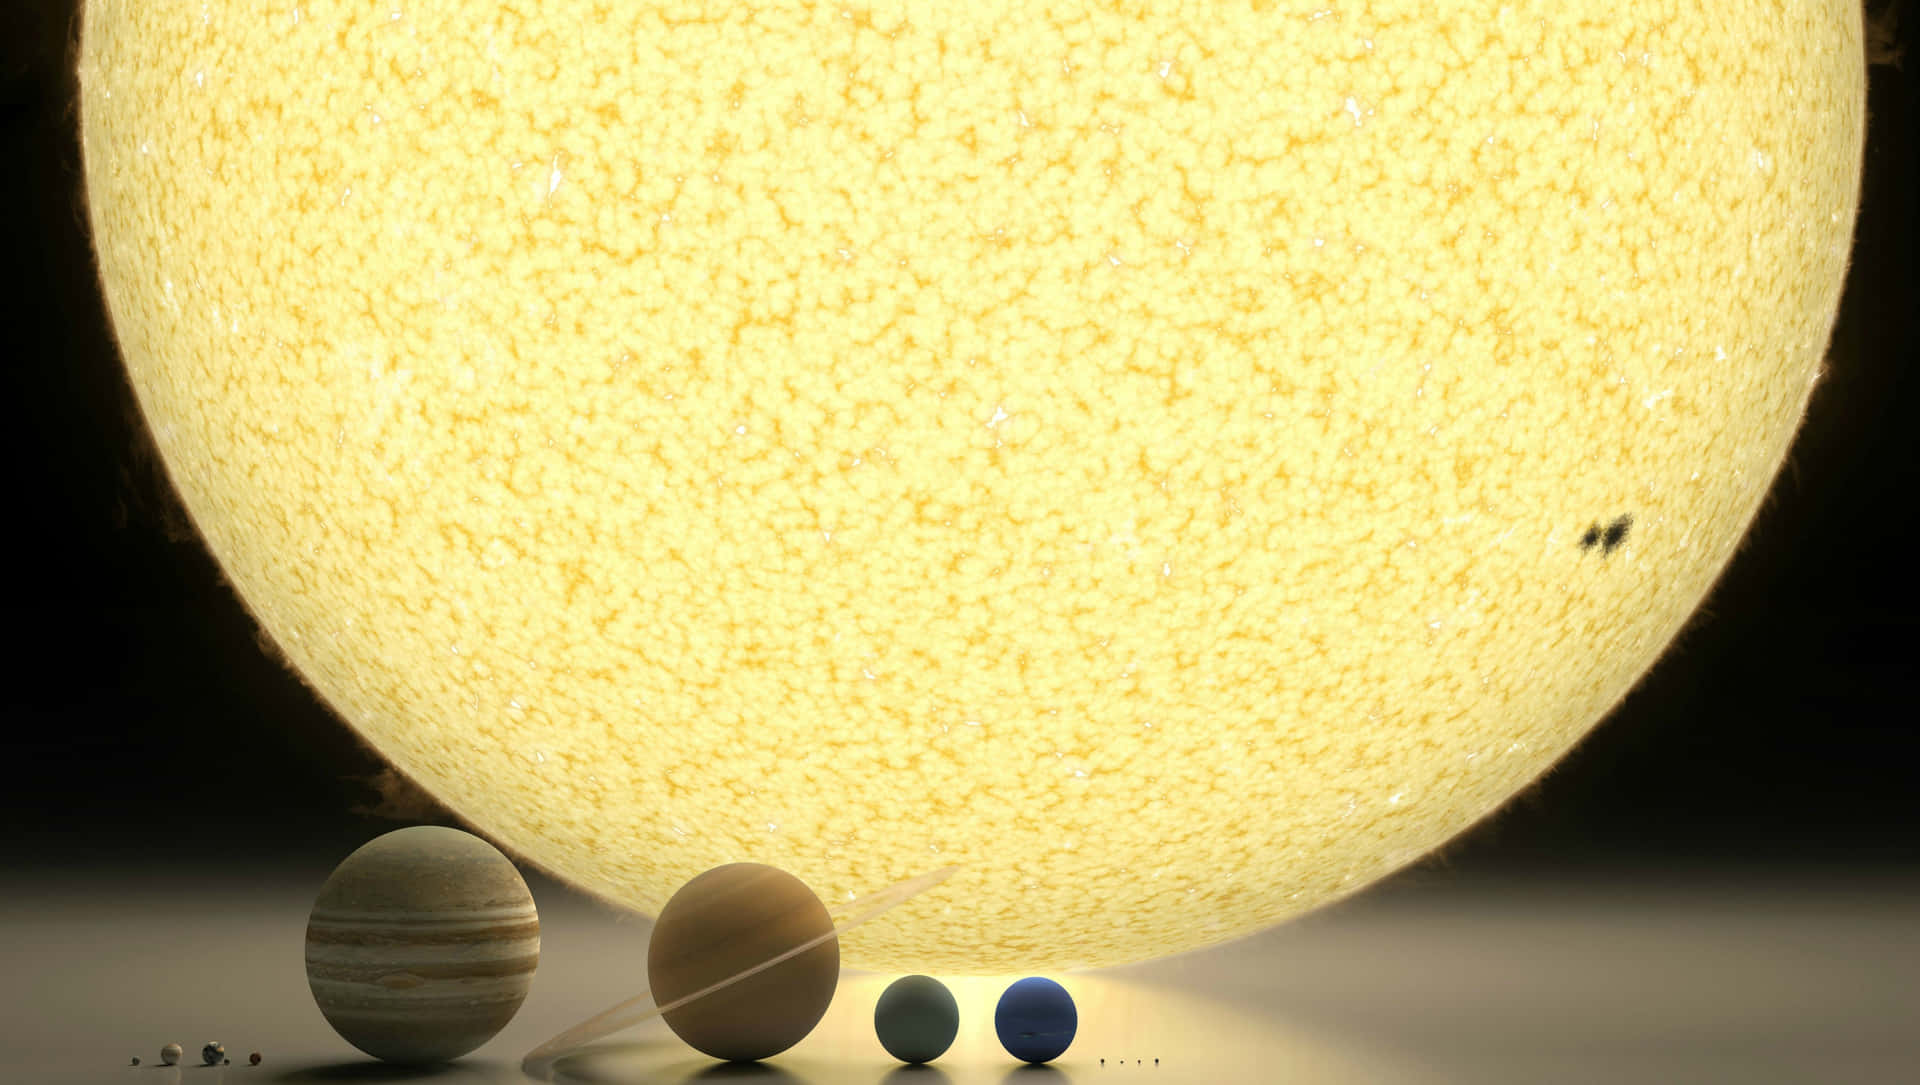 Solar System Model Wallpaper